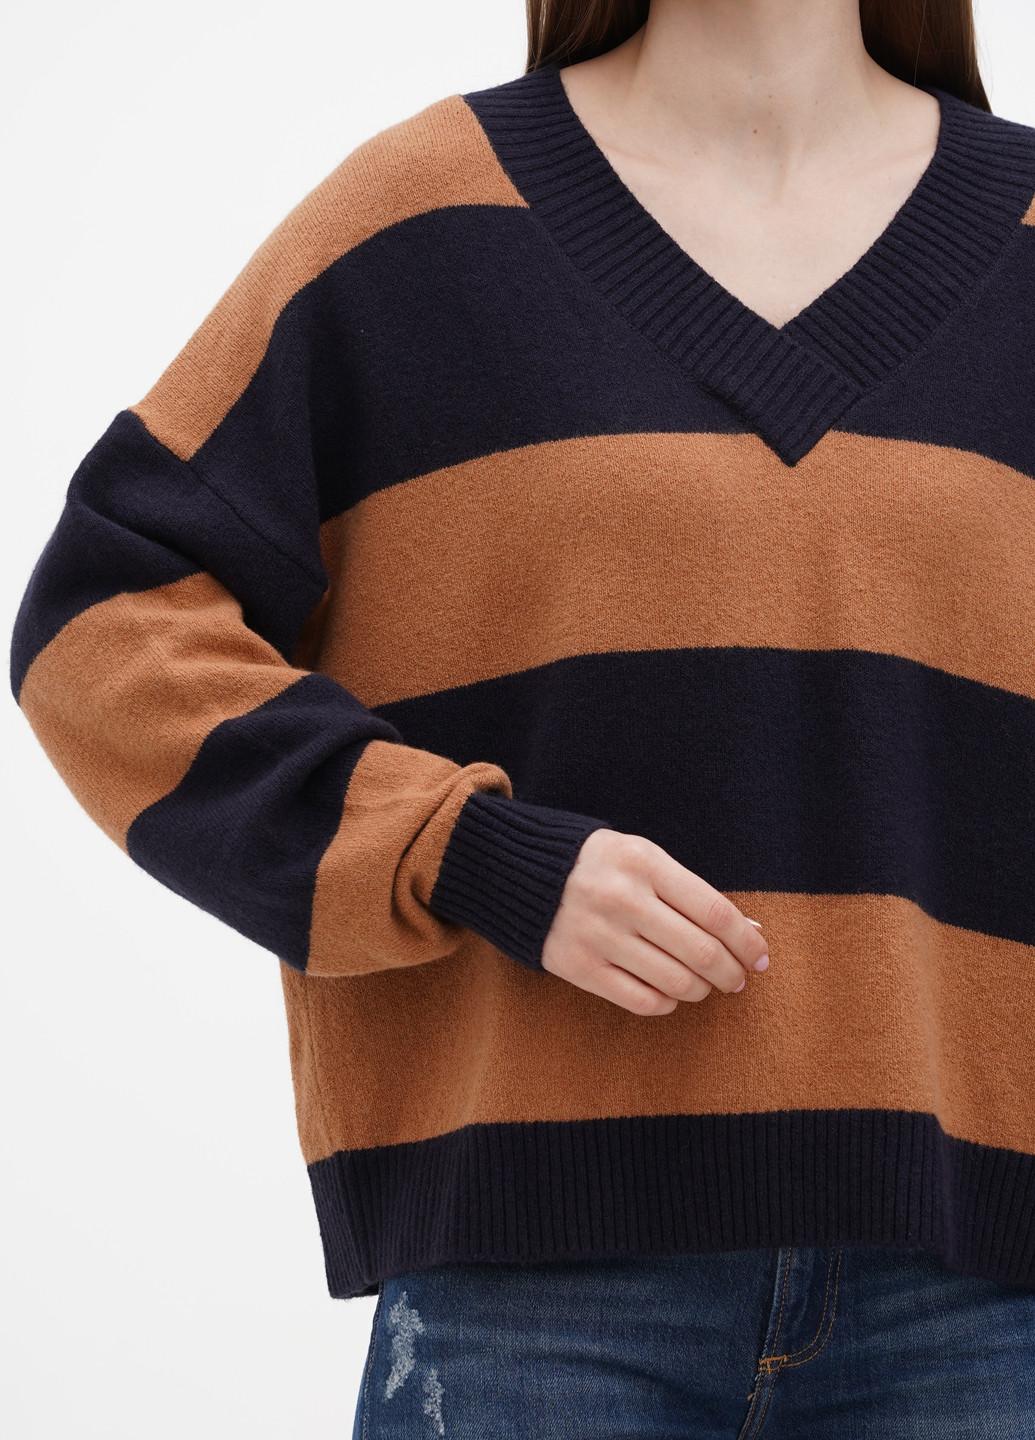 Комбинированный демисезонный пуловер пуловер Comma